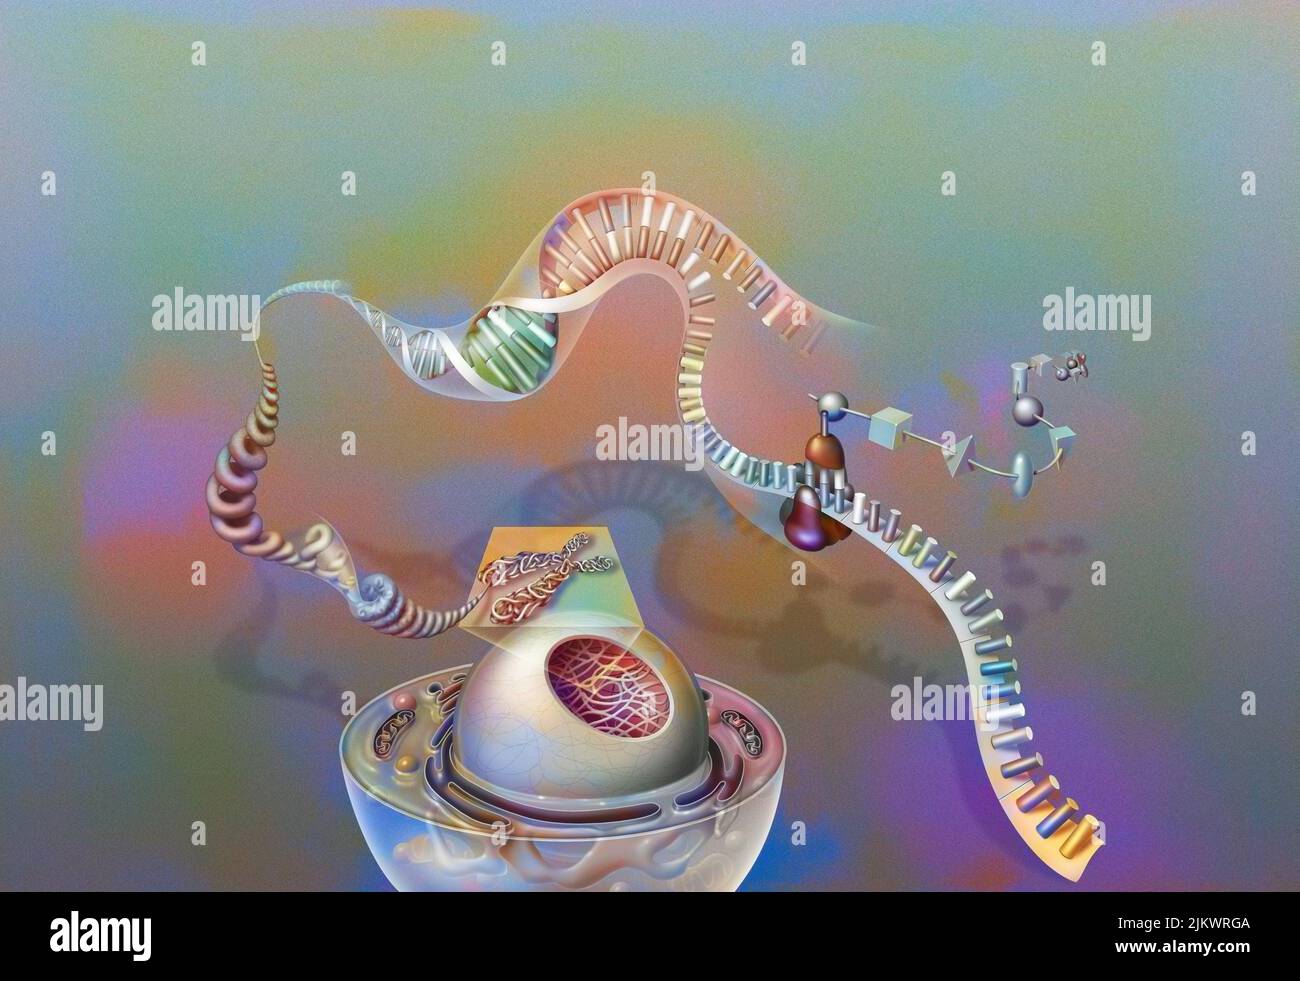 Gènes : noyau d'une cellule avec chromosome, chromatine, hélice d'ADN, gènes, ribosome, protéines. Banque D'Images